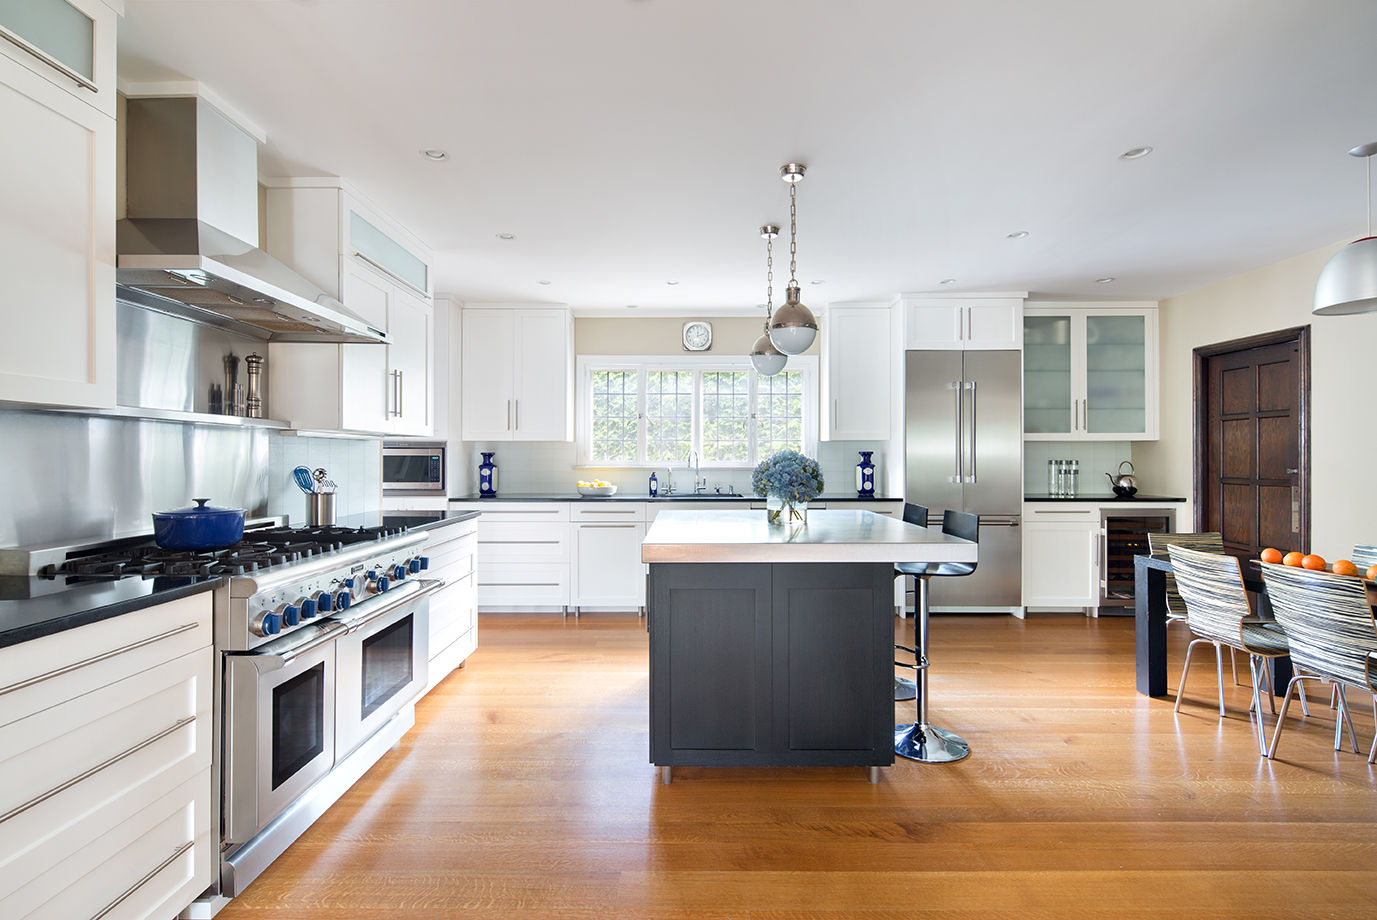 Kitchens, Clean Design Clean Design Cocinas modernas: Ideas, imágenes y decoración